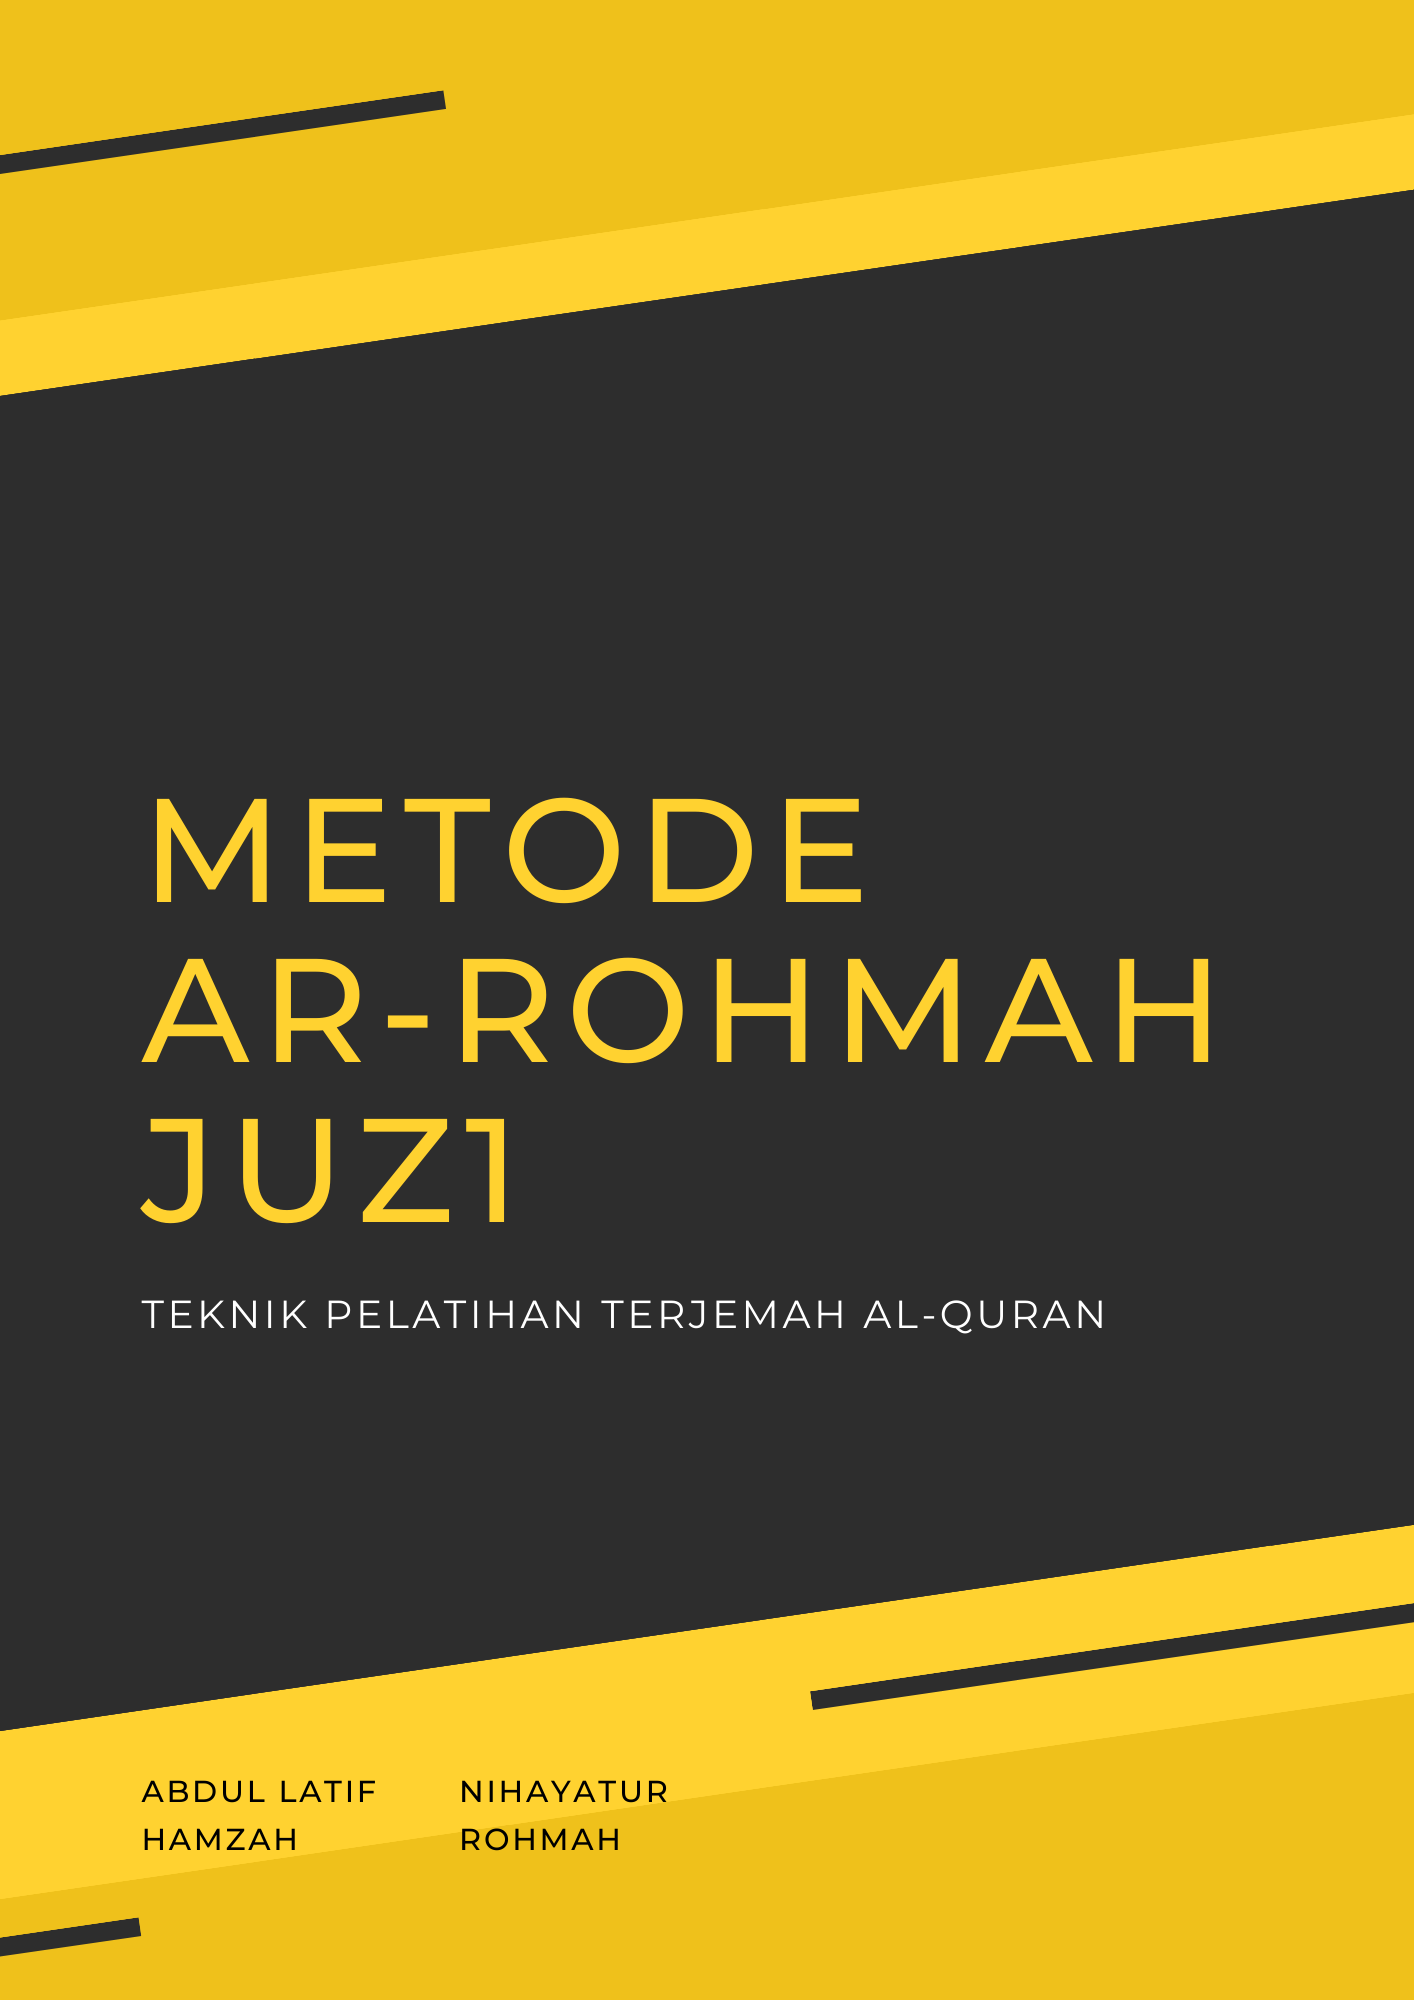 Metode Ar-Rohmah juz1